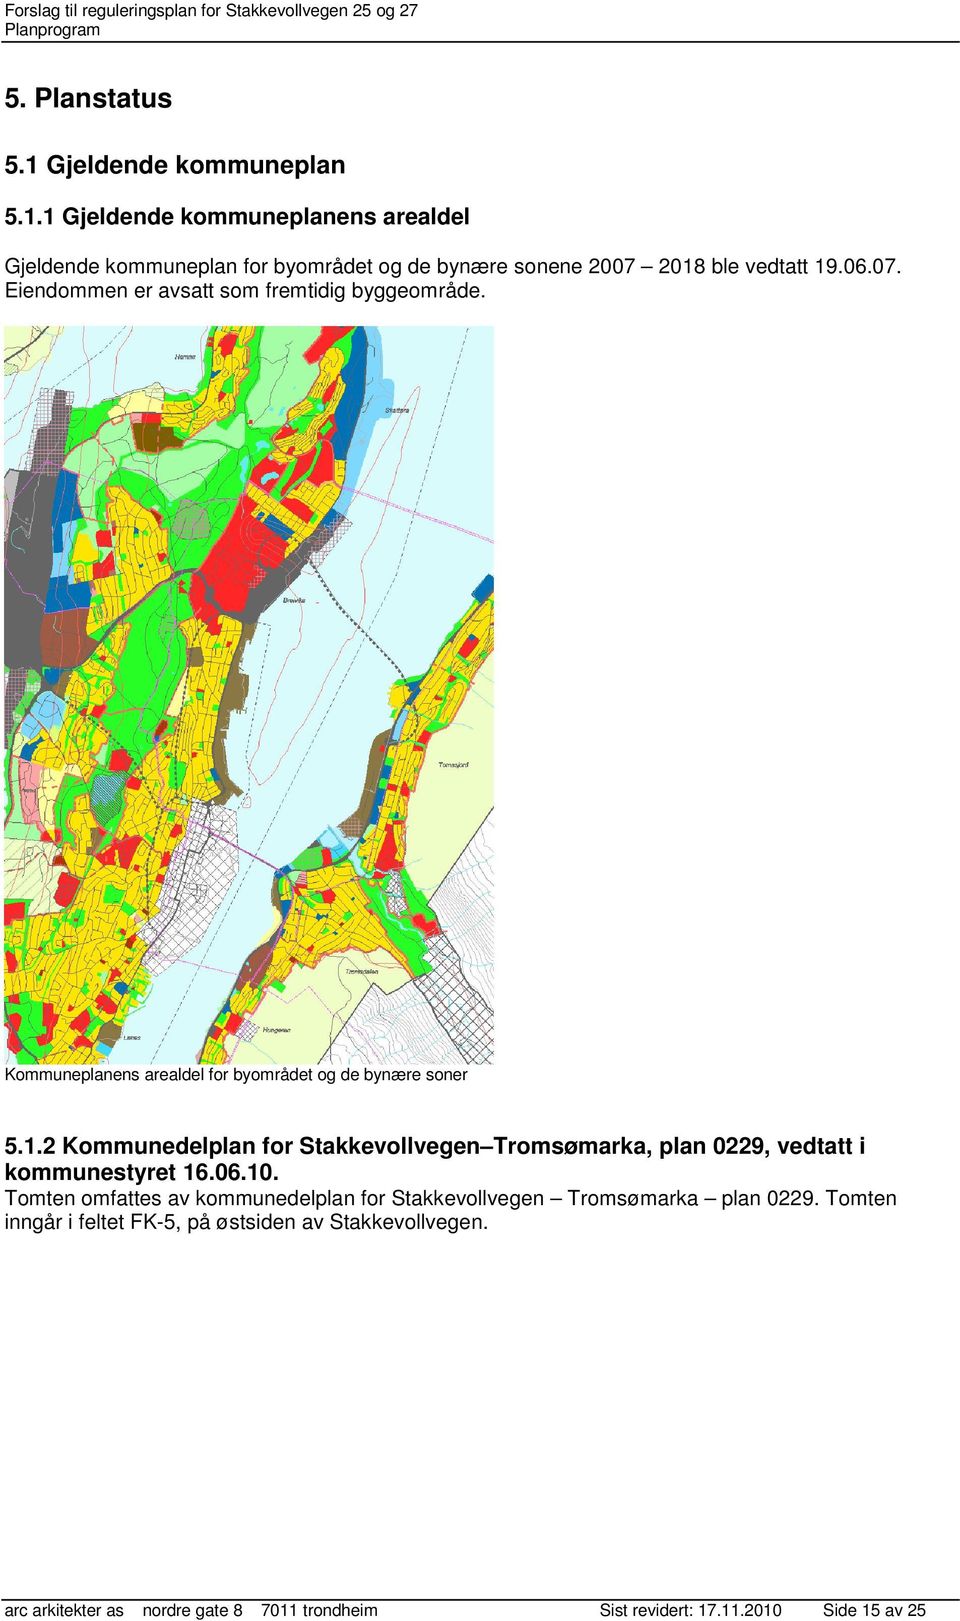 2 Kommunedelplan for Stakkevollvegen Tromsømarka, plan 0229, vedtatt i kommunestyret 16.06.10.